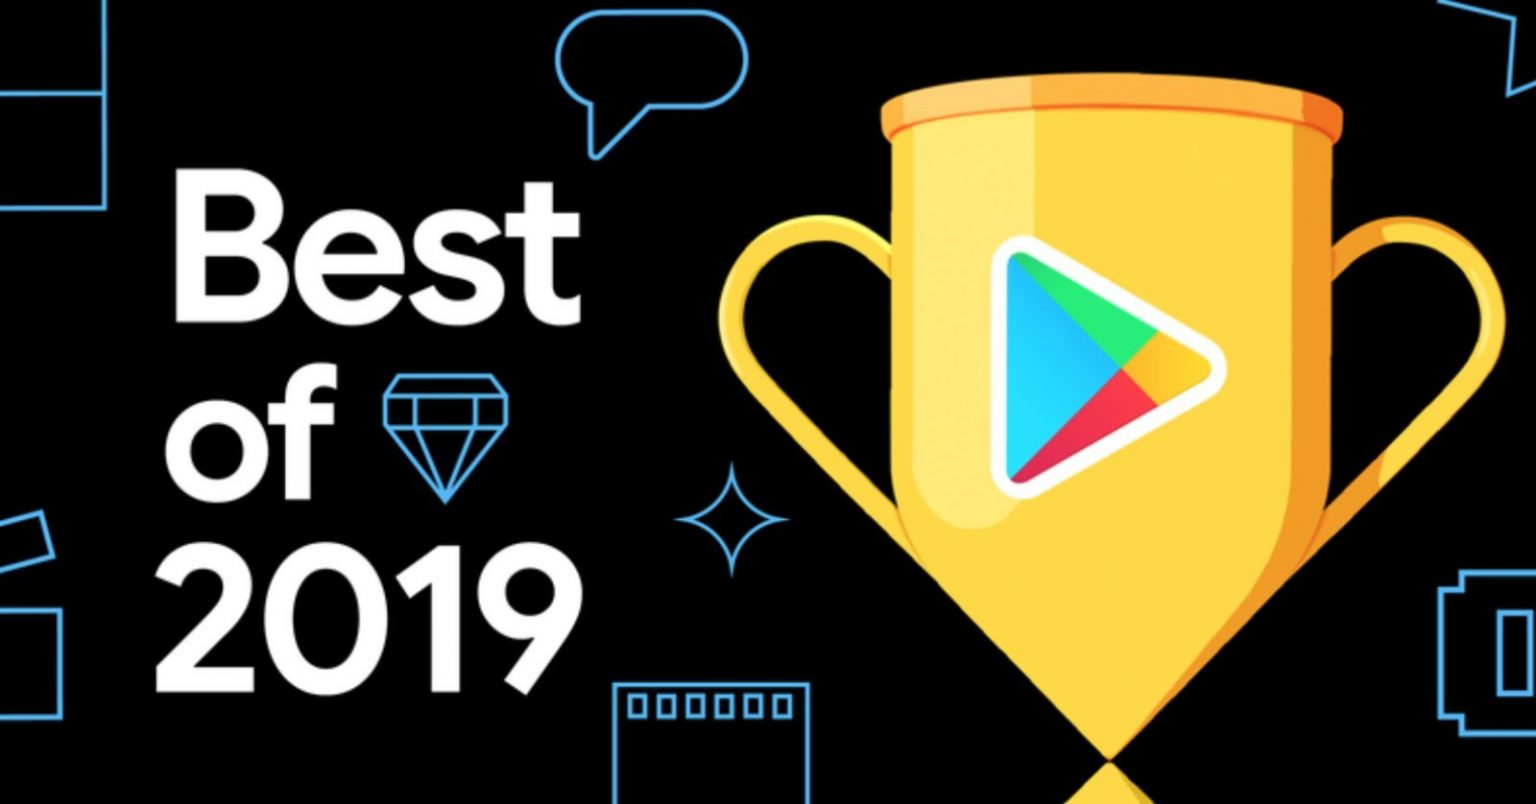 جوجل بلاي تنشر قائمة أفضل المحتوى لعام 2019